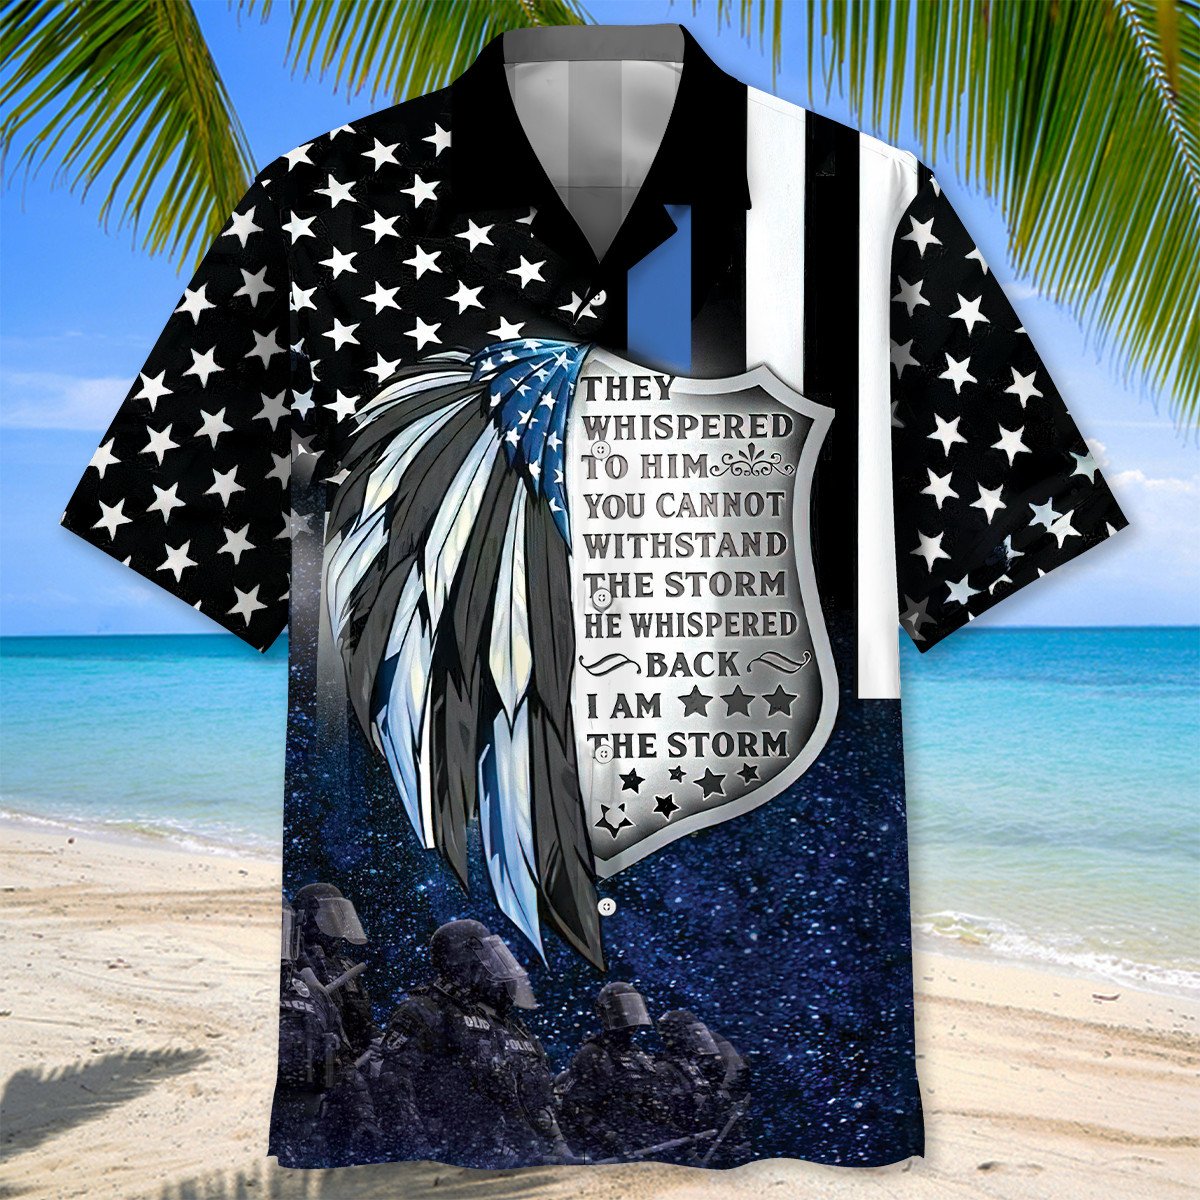 Police Proud Hawaiian Shirt